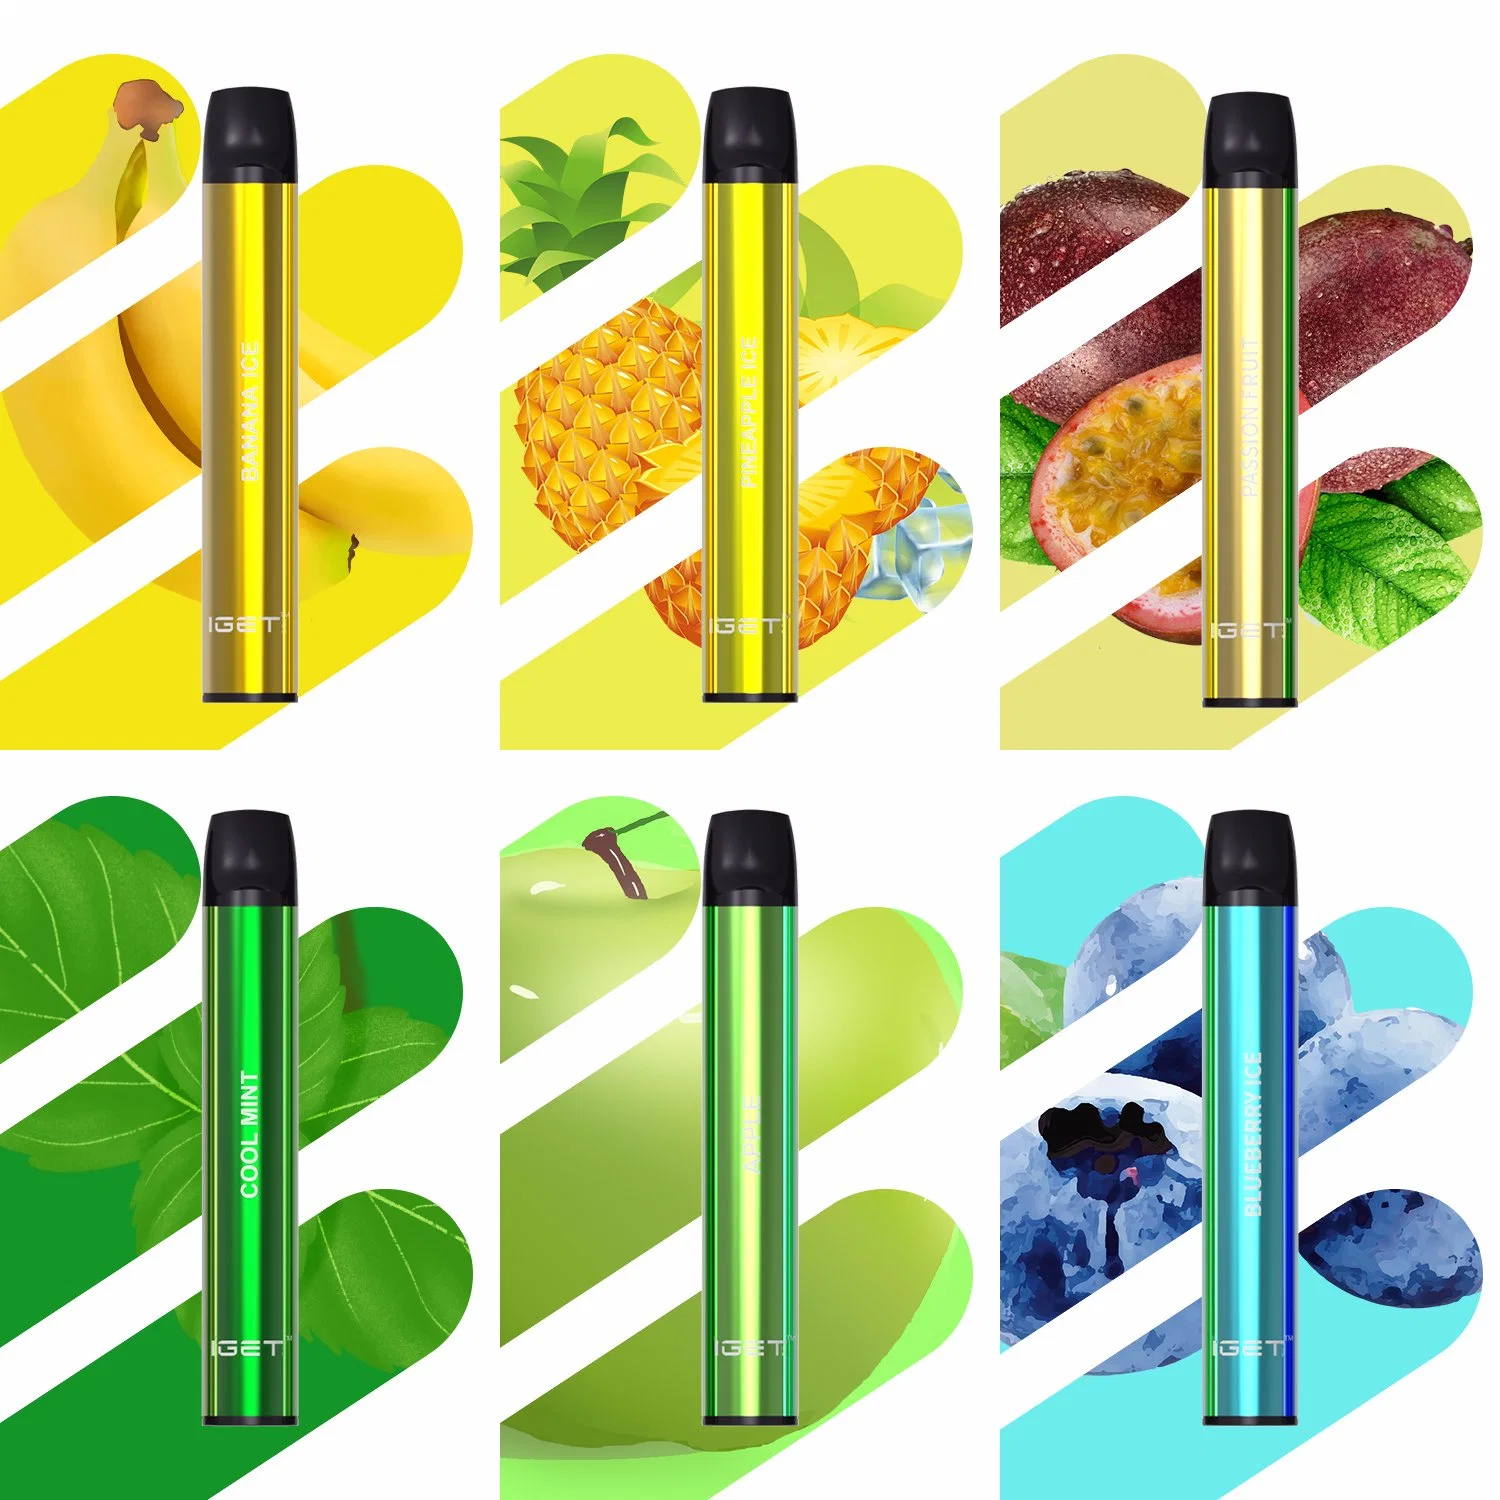 Iget Shion Vape stylo jetable 600 bouffées 2.4ml Prix de gros paquet cadeau saveur de fruits E CIGS Vape Pen